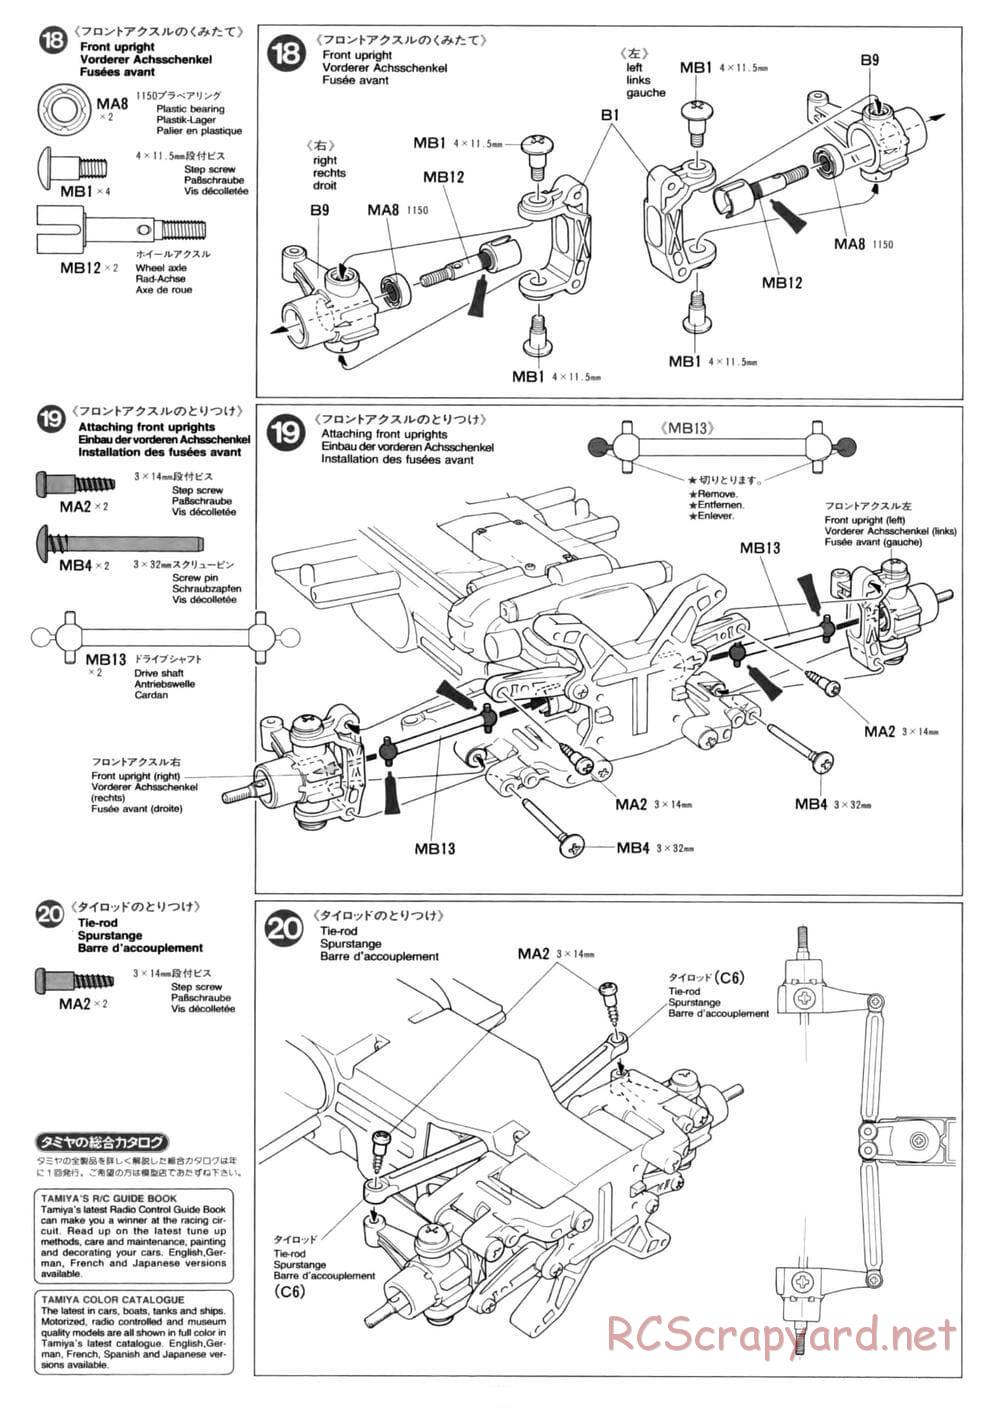 Tamiya - TL-01 Chassis - Manual - Page 12